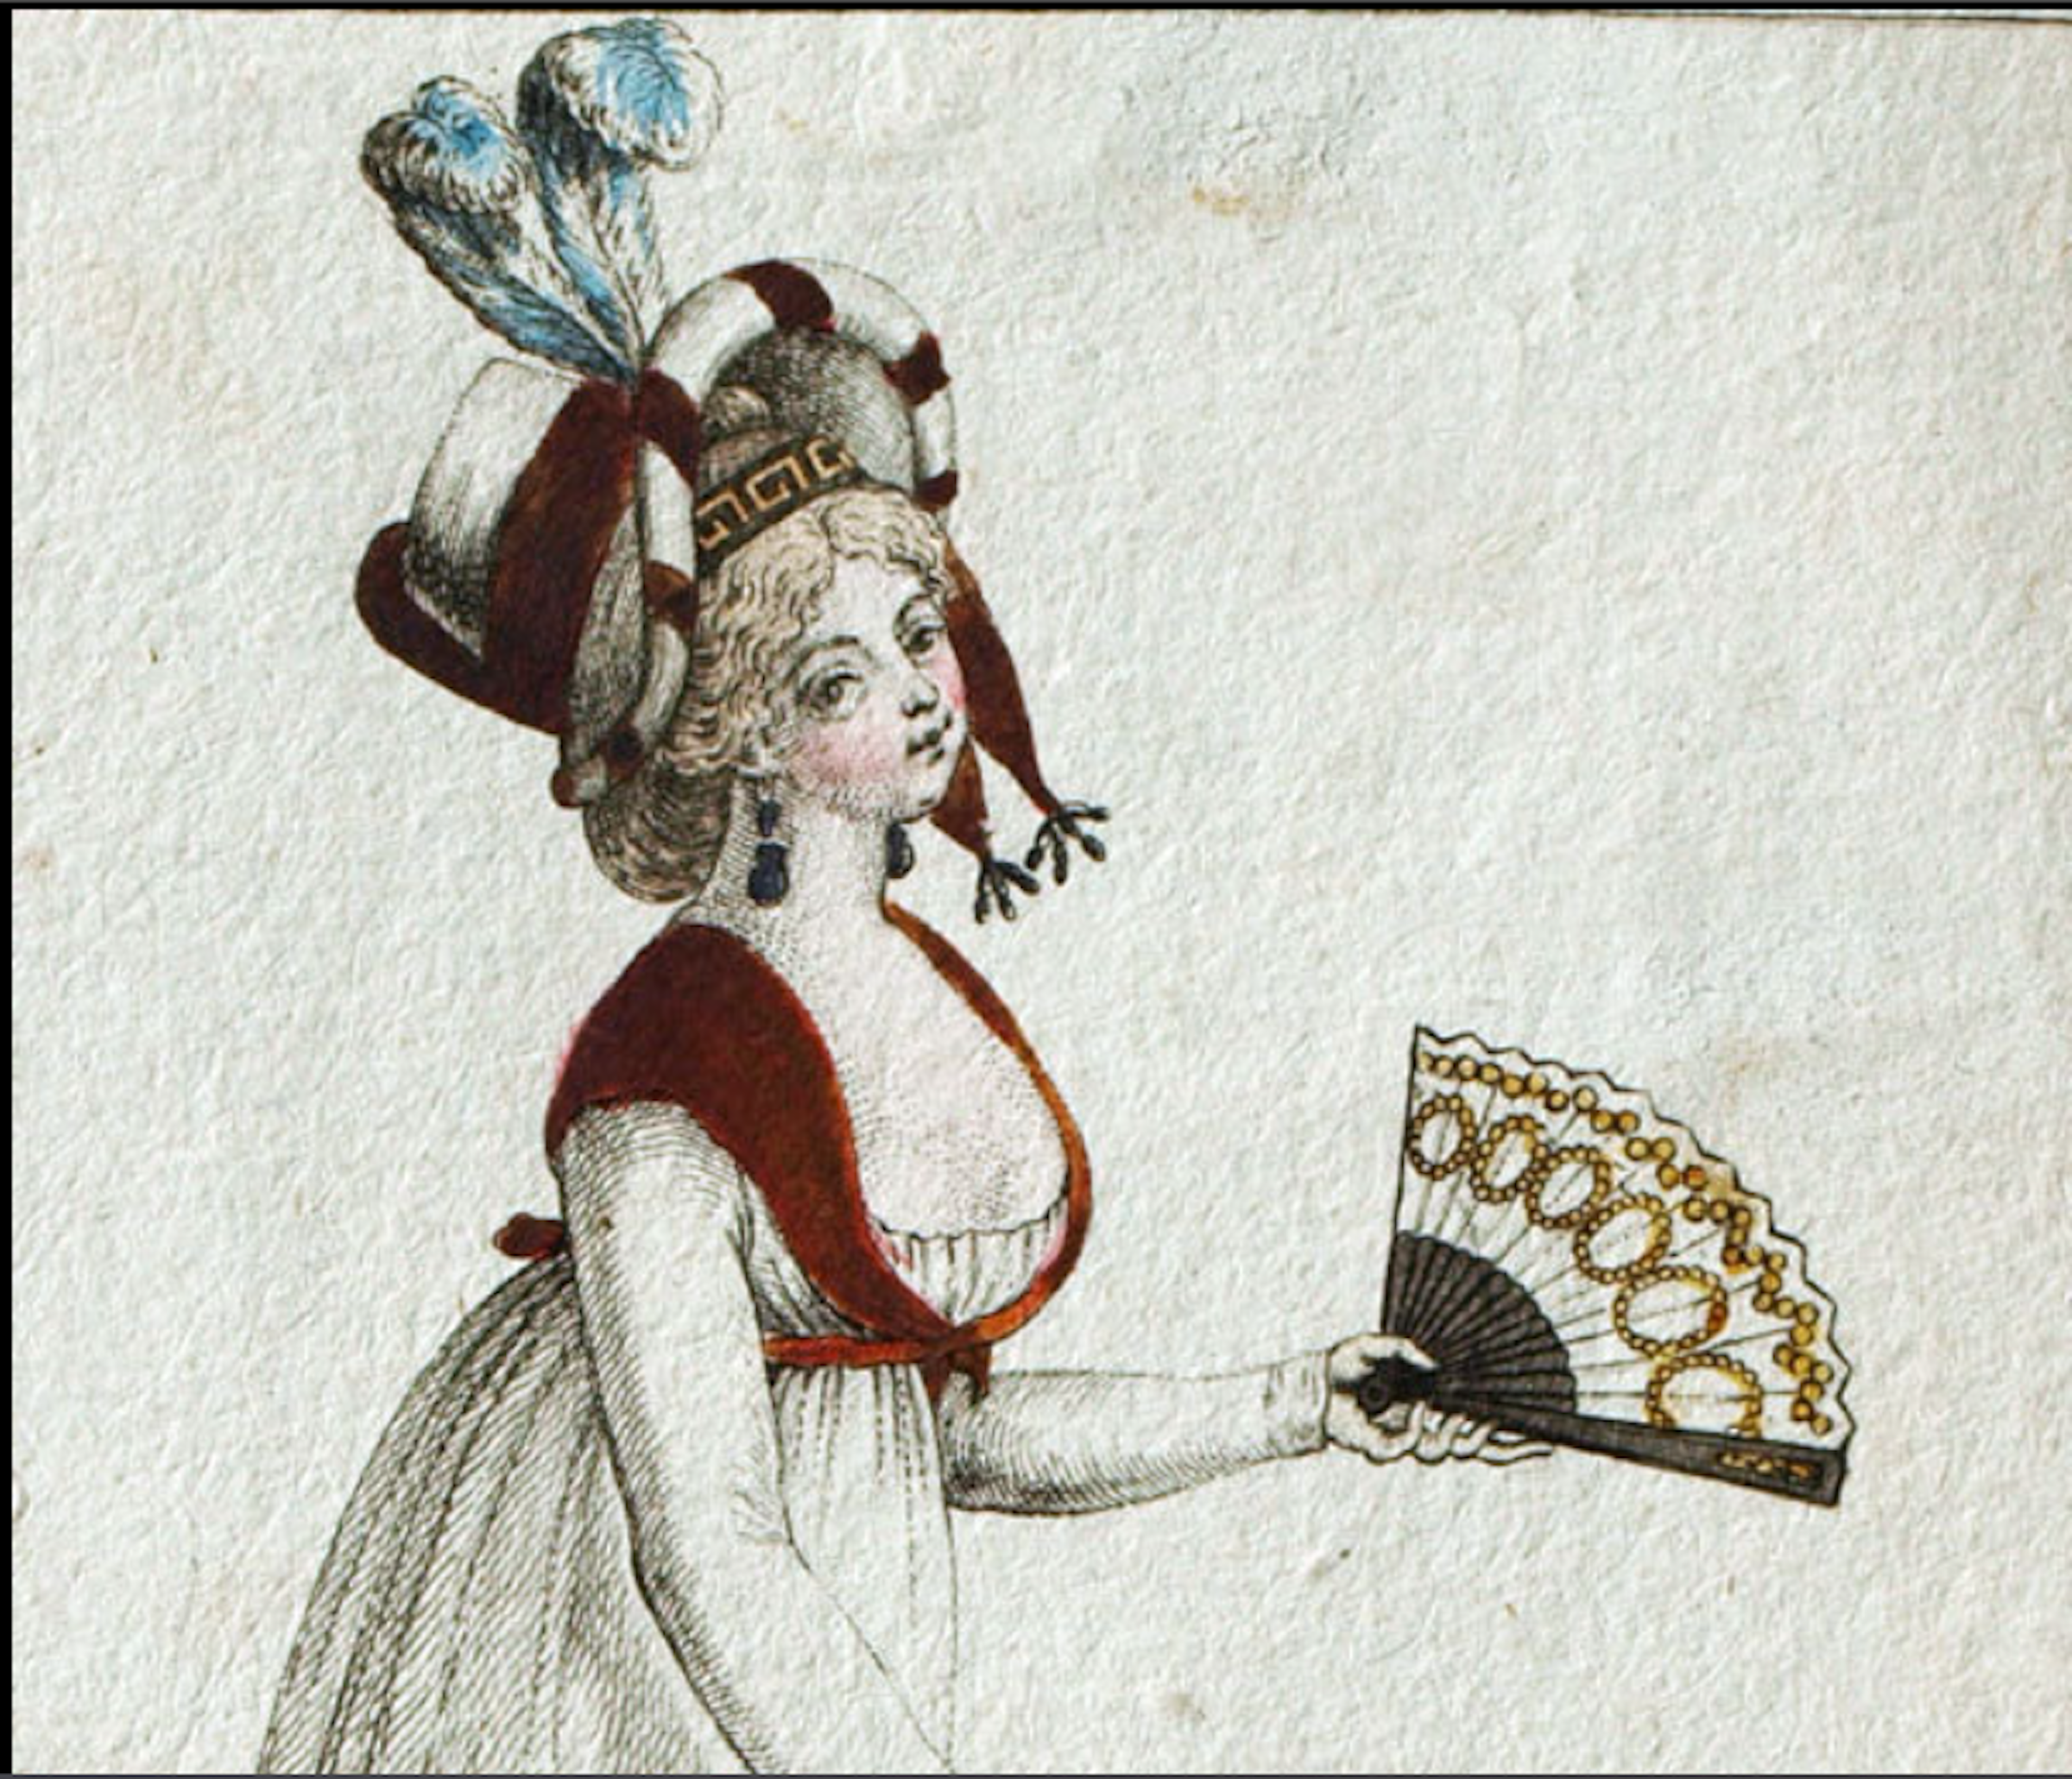 「パリの衣装」『ジュルナル・デ・ダム・エ・デ・モード（婦人流行新報）』1797年版より。(Costume Parisien, Journal des dames et des modes, 1797 gravure n°8)。この頃、フランスは政情不安定が続き、ナポレオンが名声を高めていく。ナポレオンが求めた古代ギリシア的なインスピレーションが女性の衣装に既に現れている。